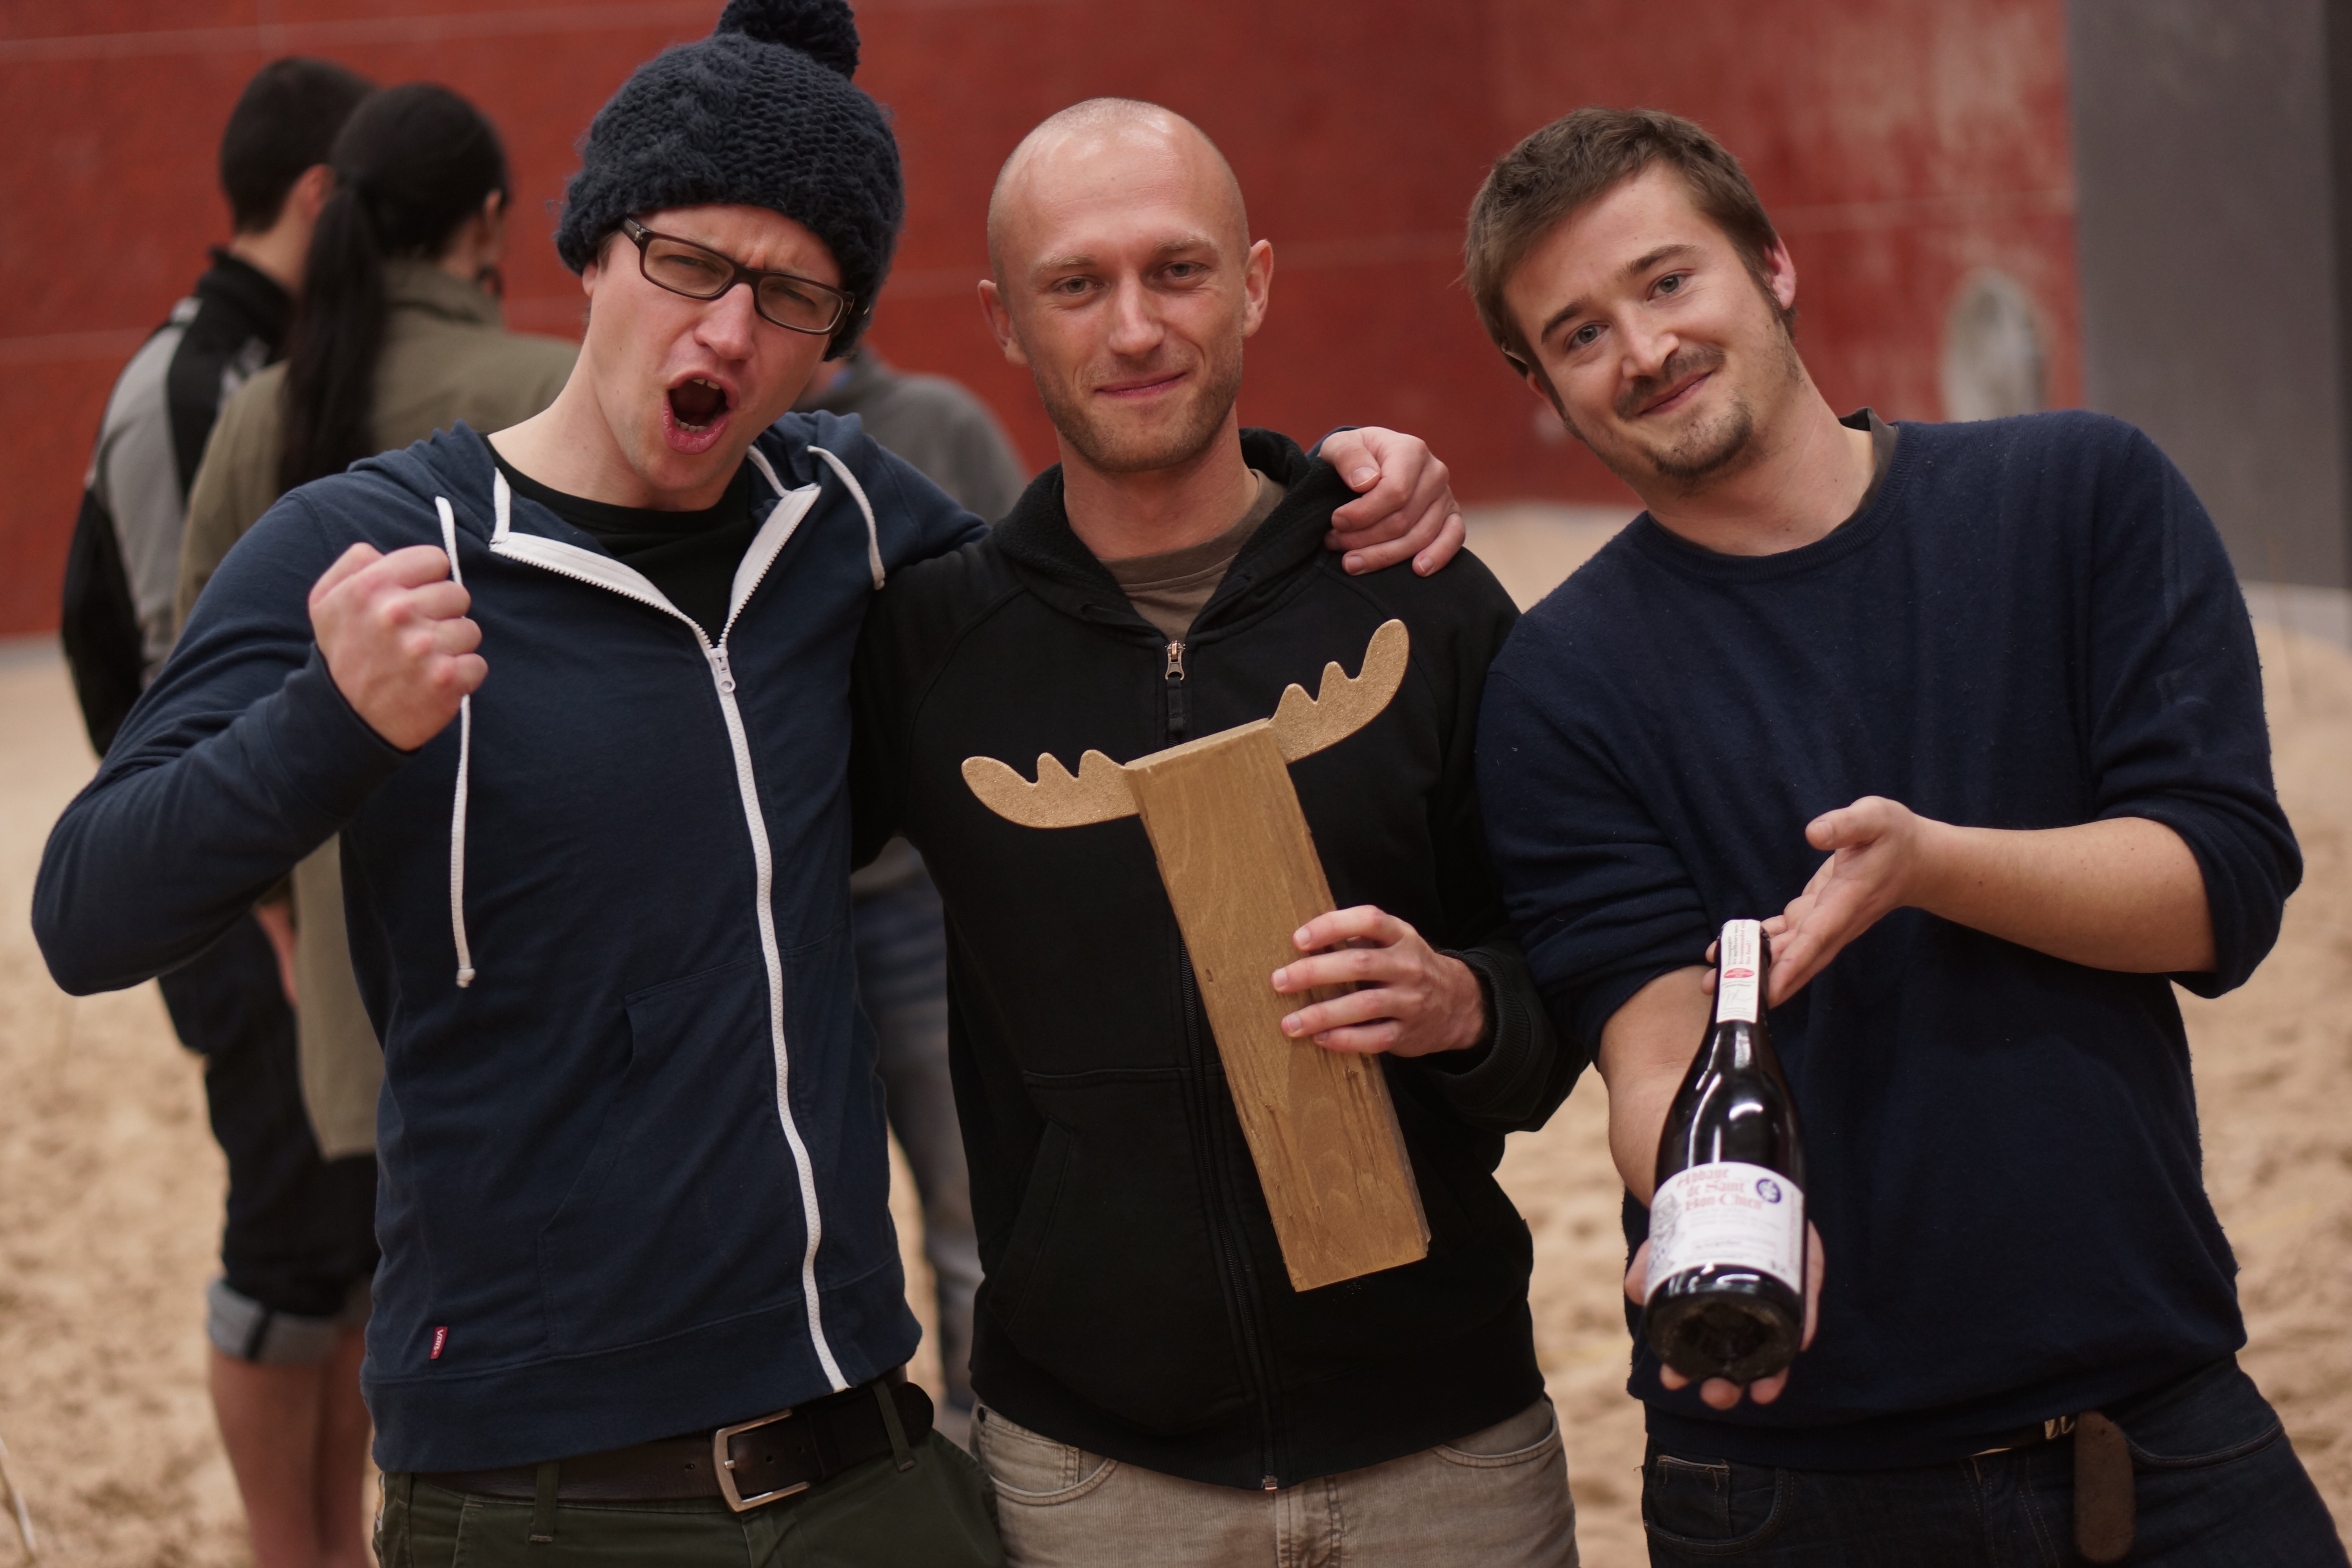 Die Sieger mit Bier und Pokal: Lars, Züst und Tobi